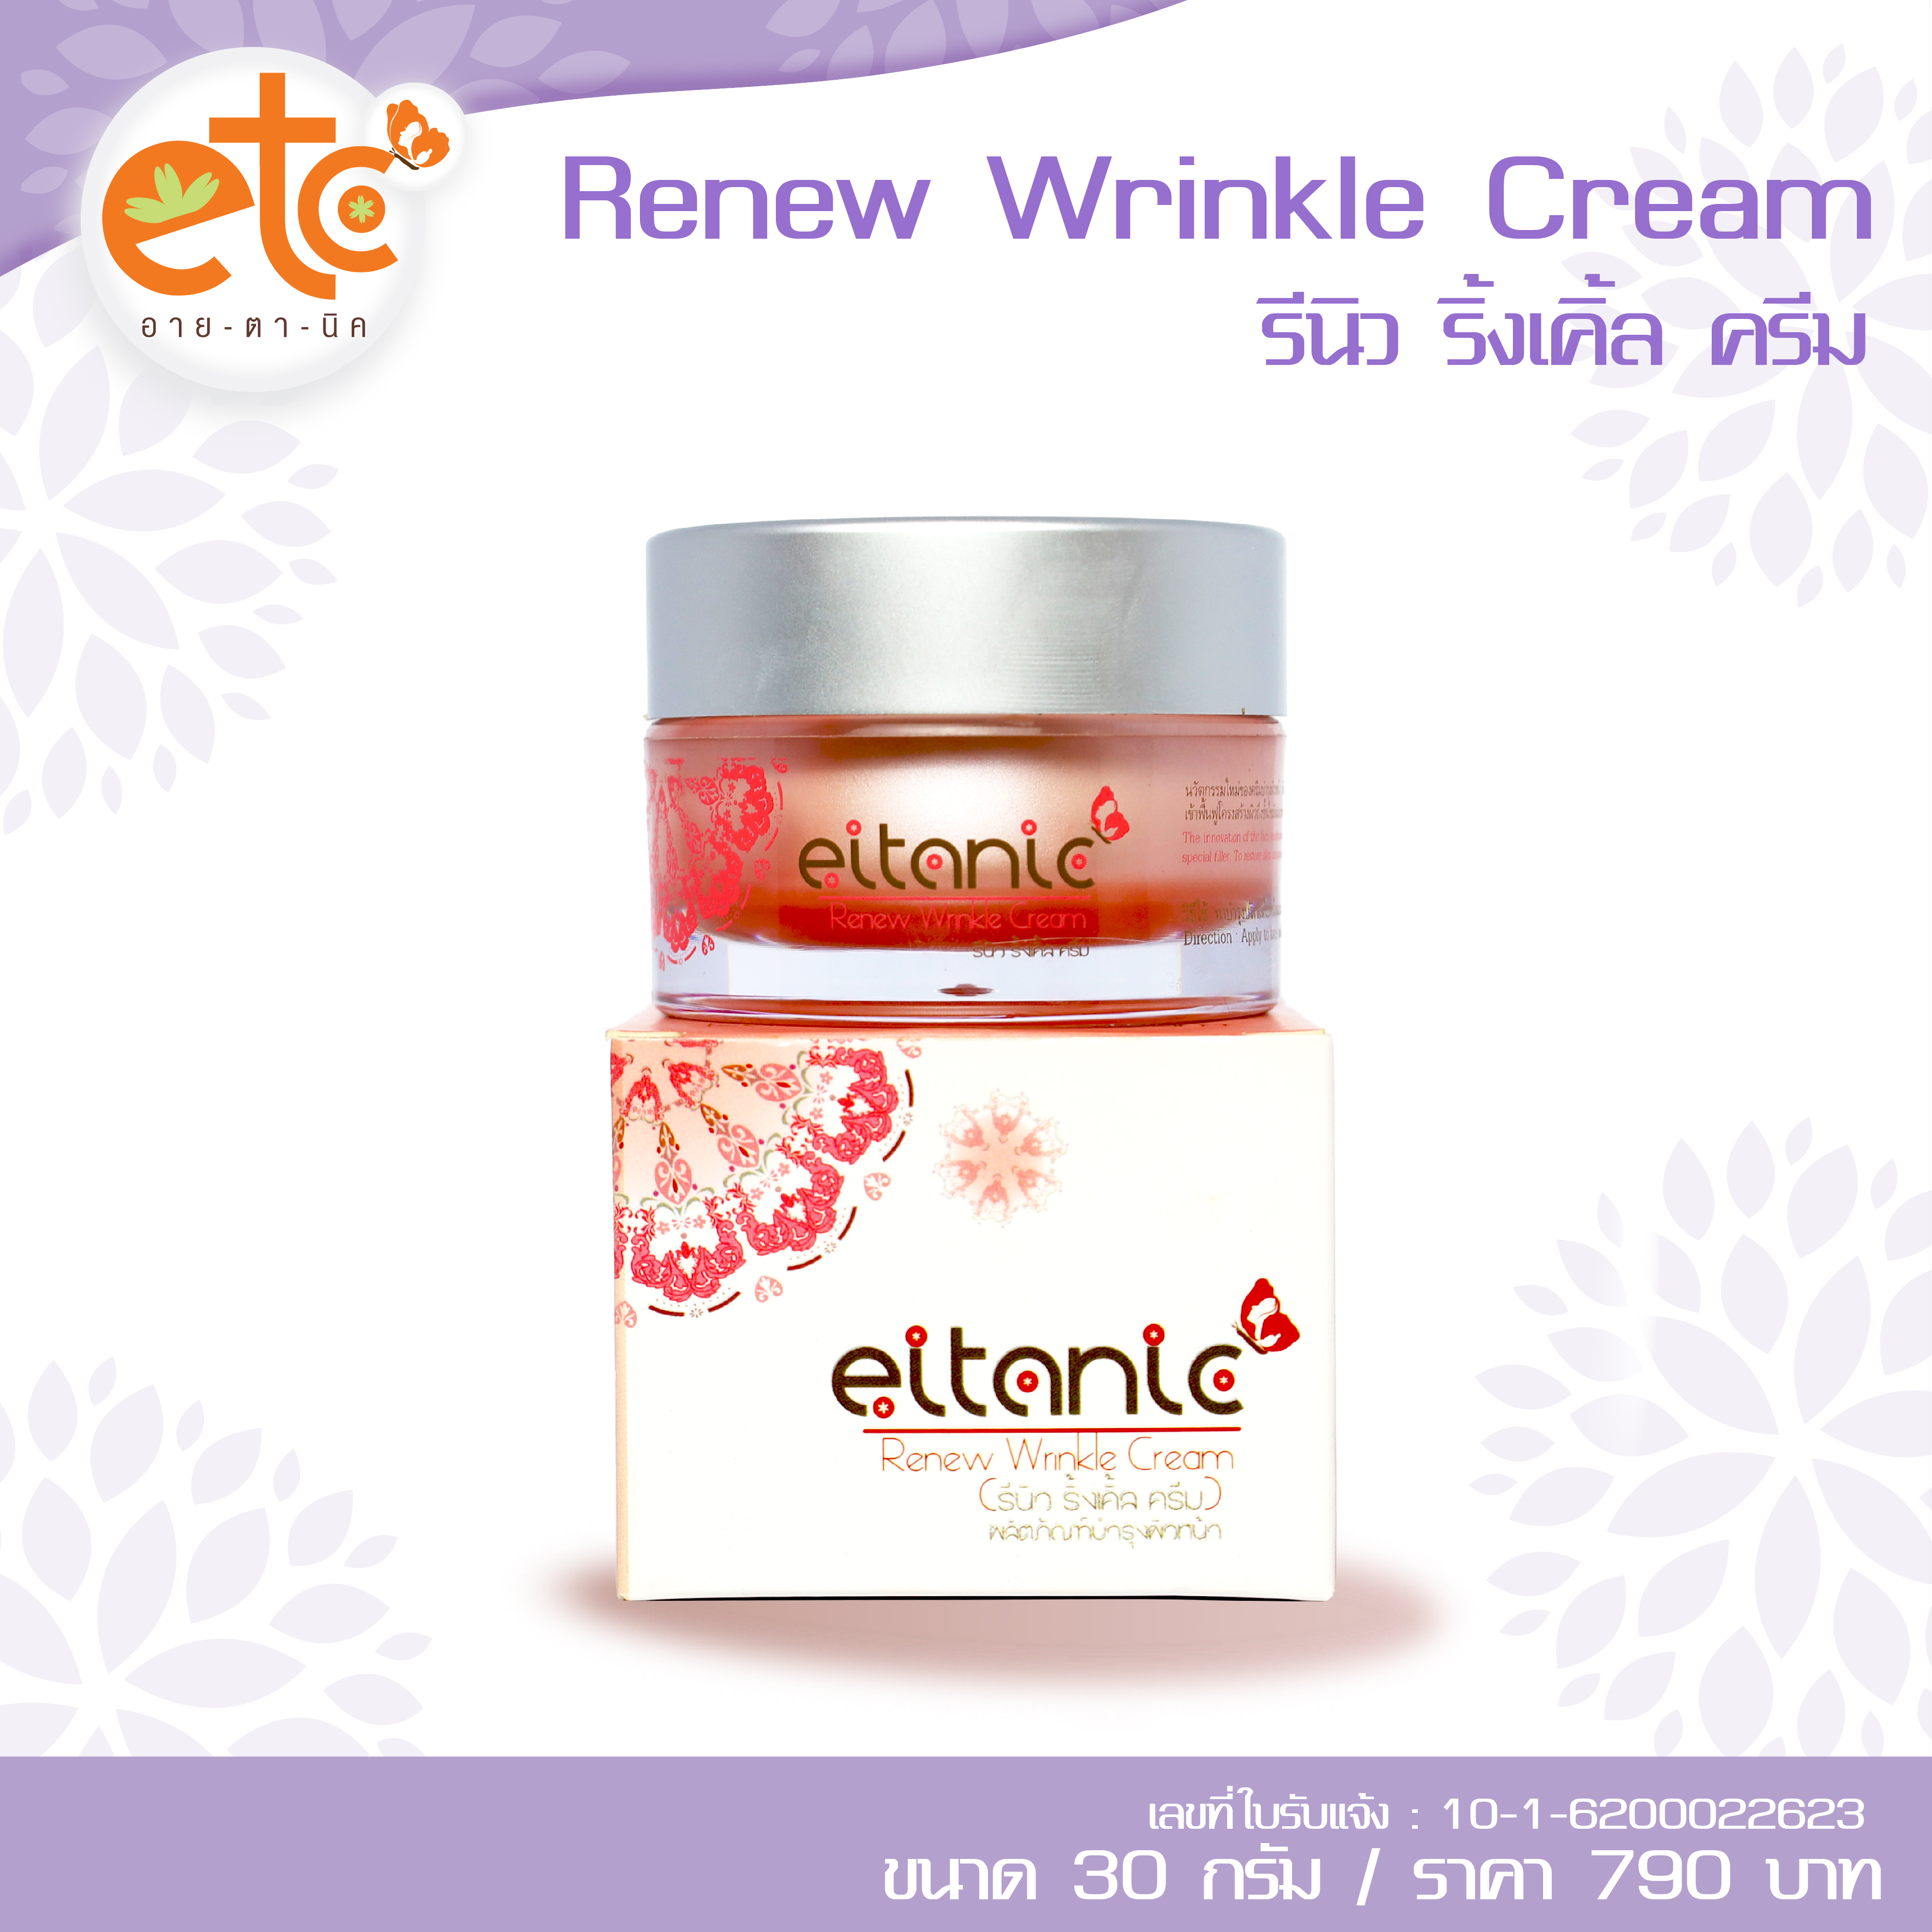 Renew Wrinkle Cream